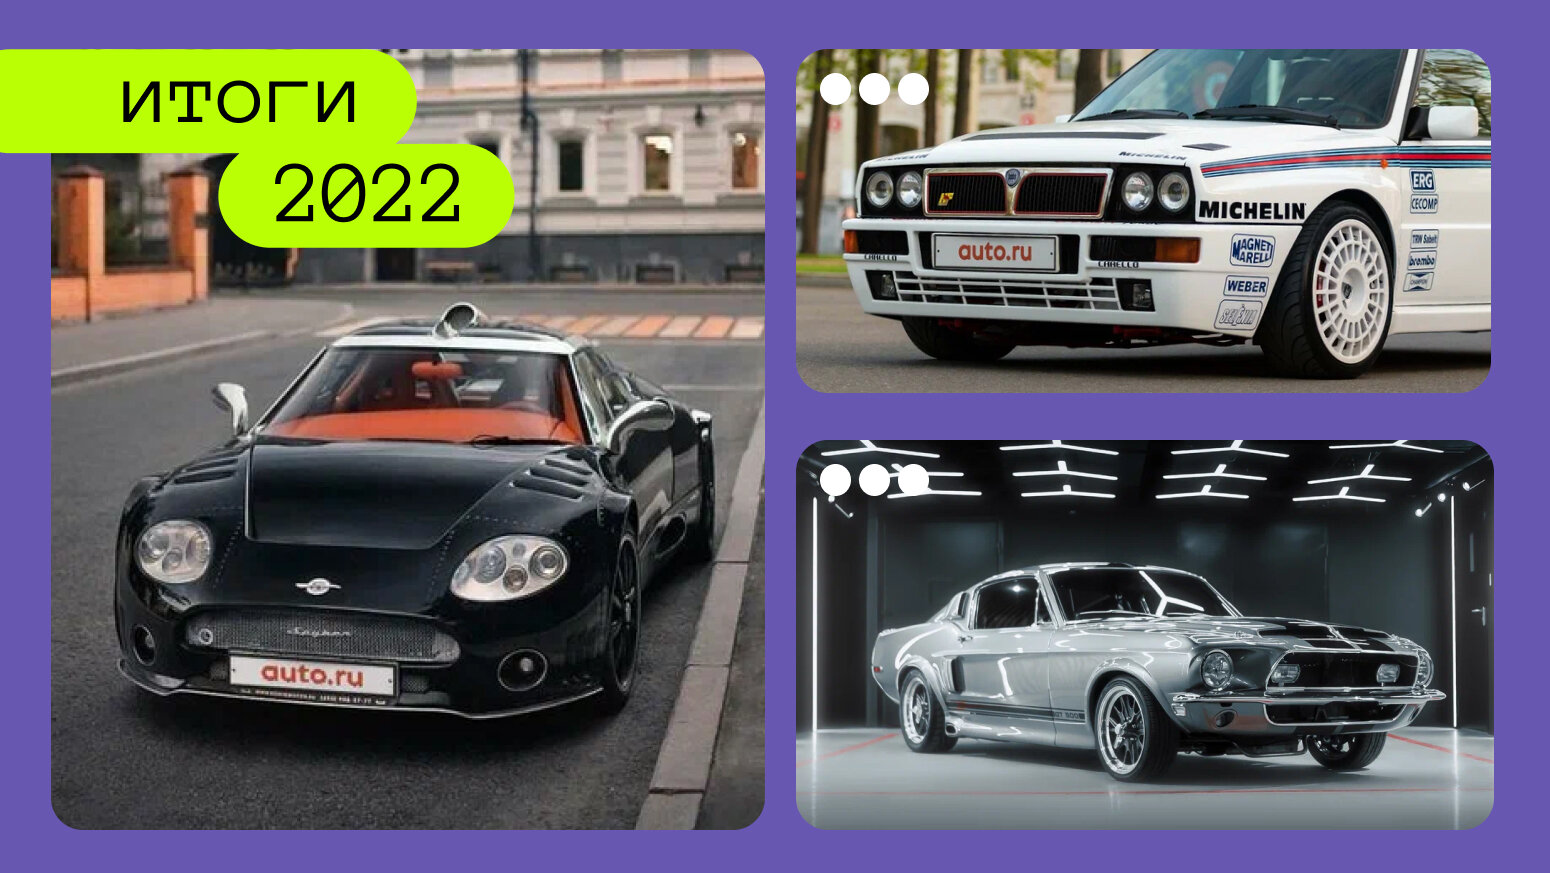 Итоги-2022: самые яркие машины года, которые продавались на Авто.ру